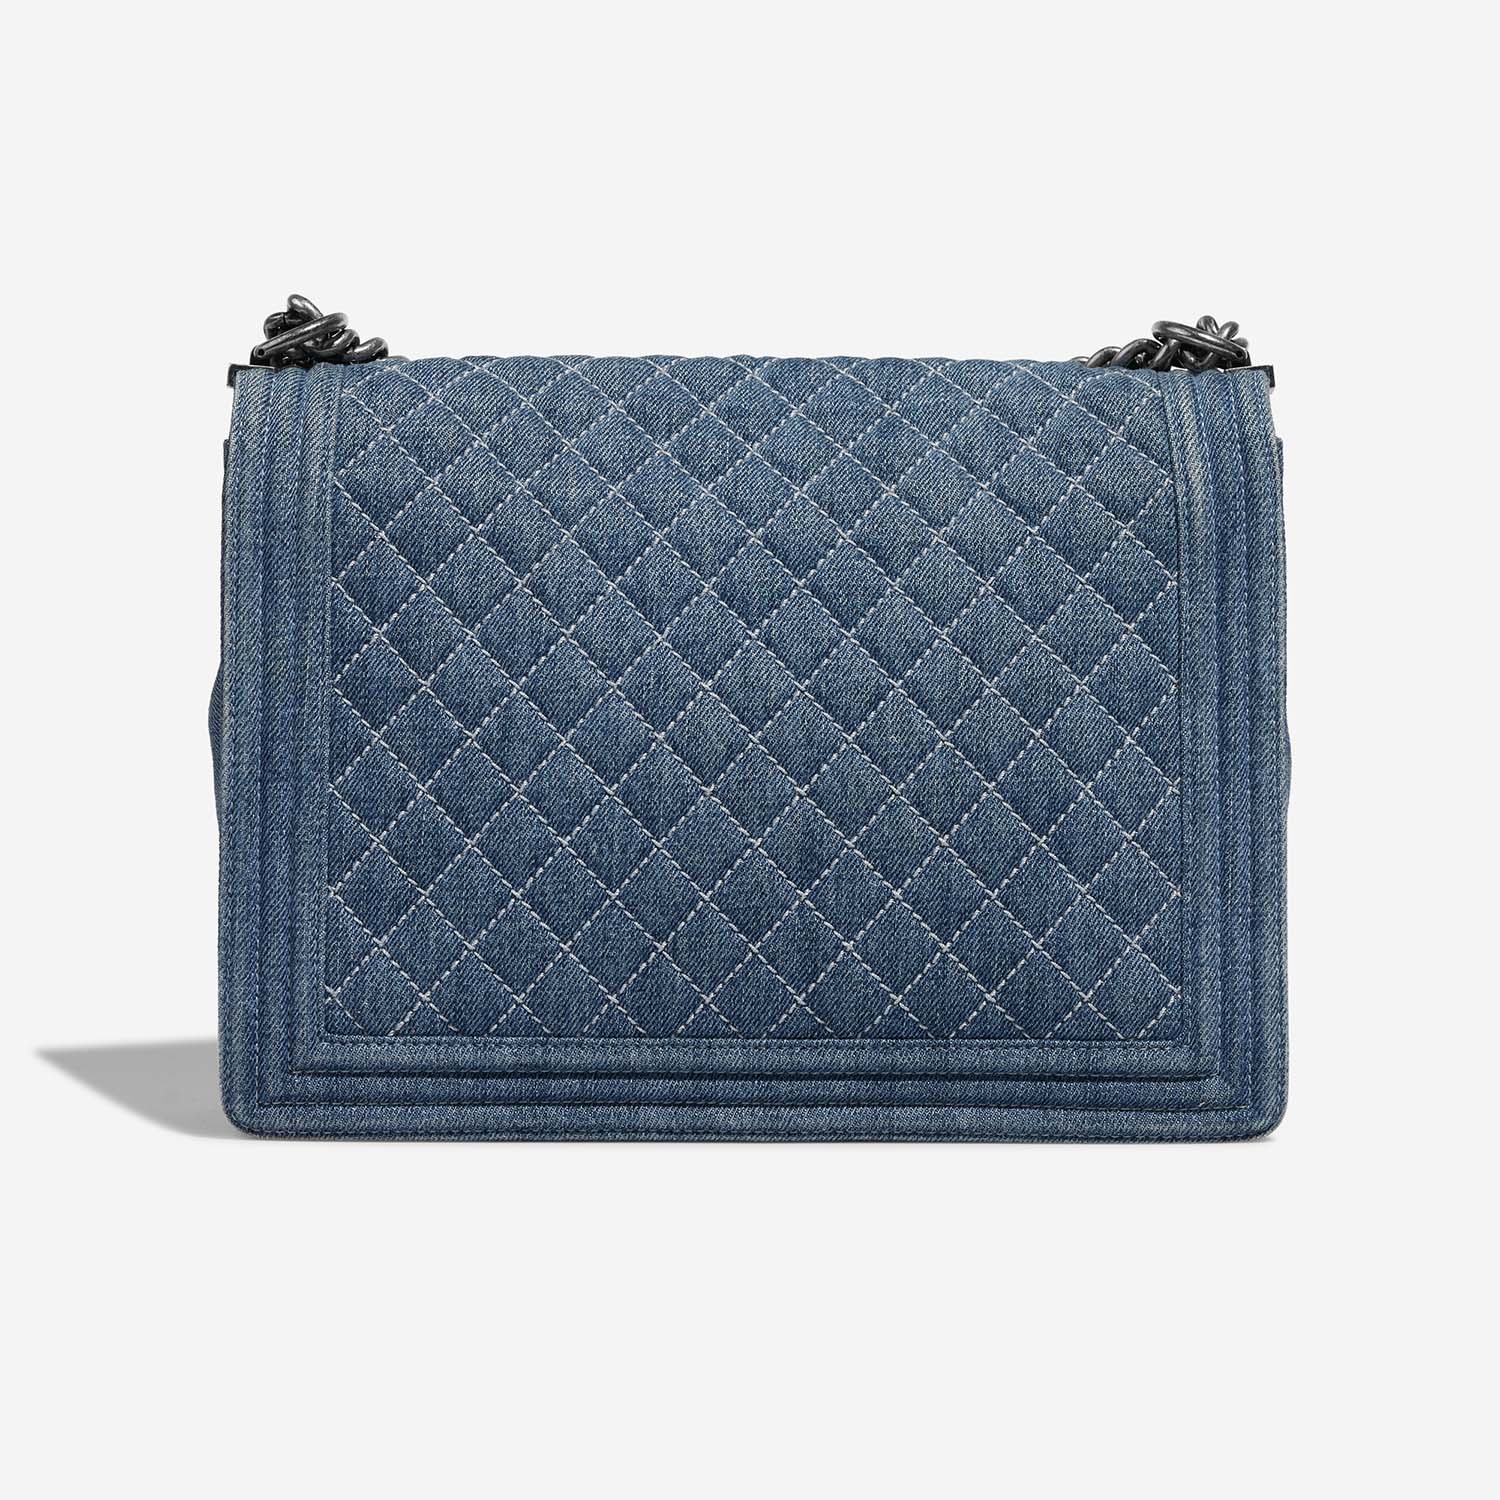 Chanel Boy Large Blue Back | Verkaufen Sie Ihre Designer-Tasche auf Saclab.com